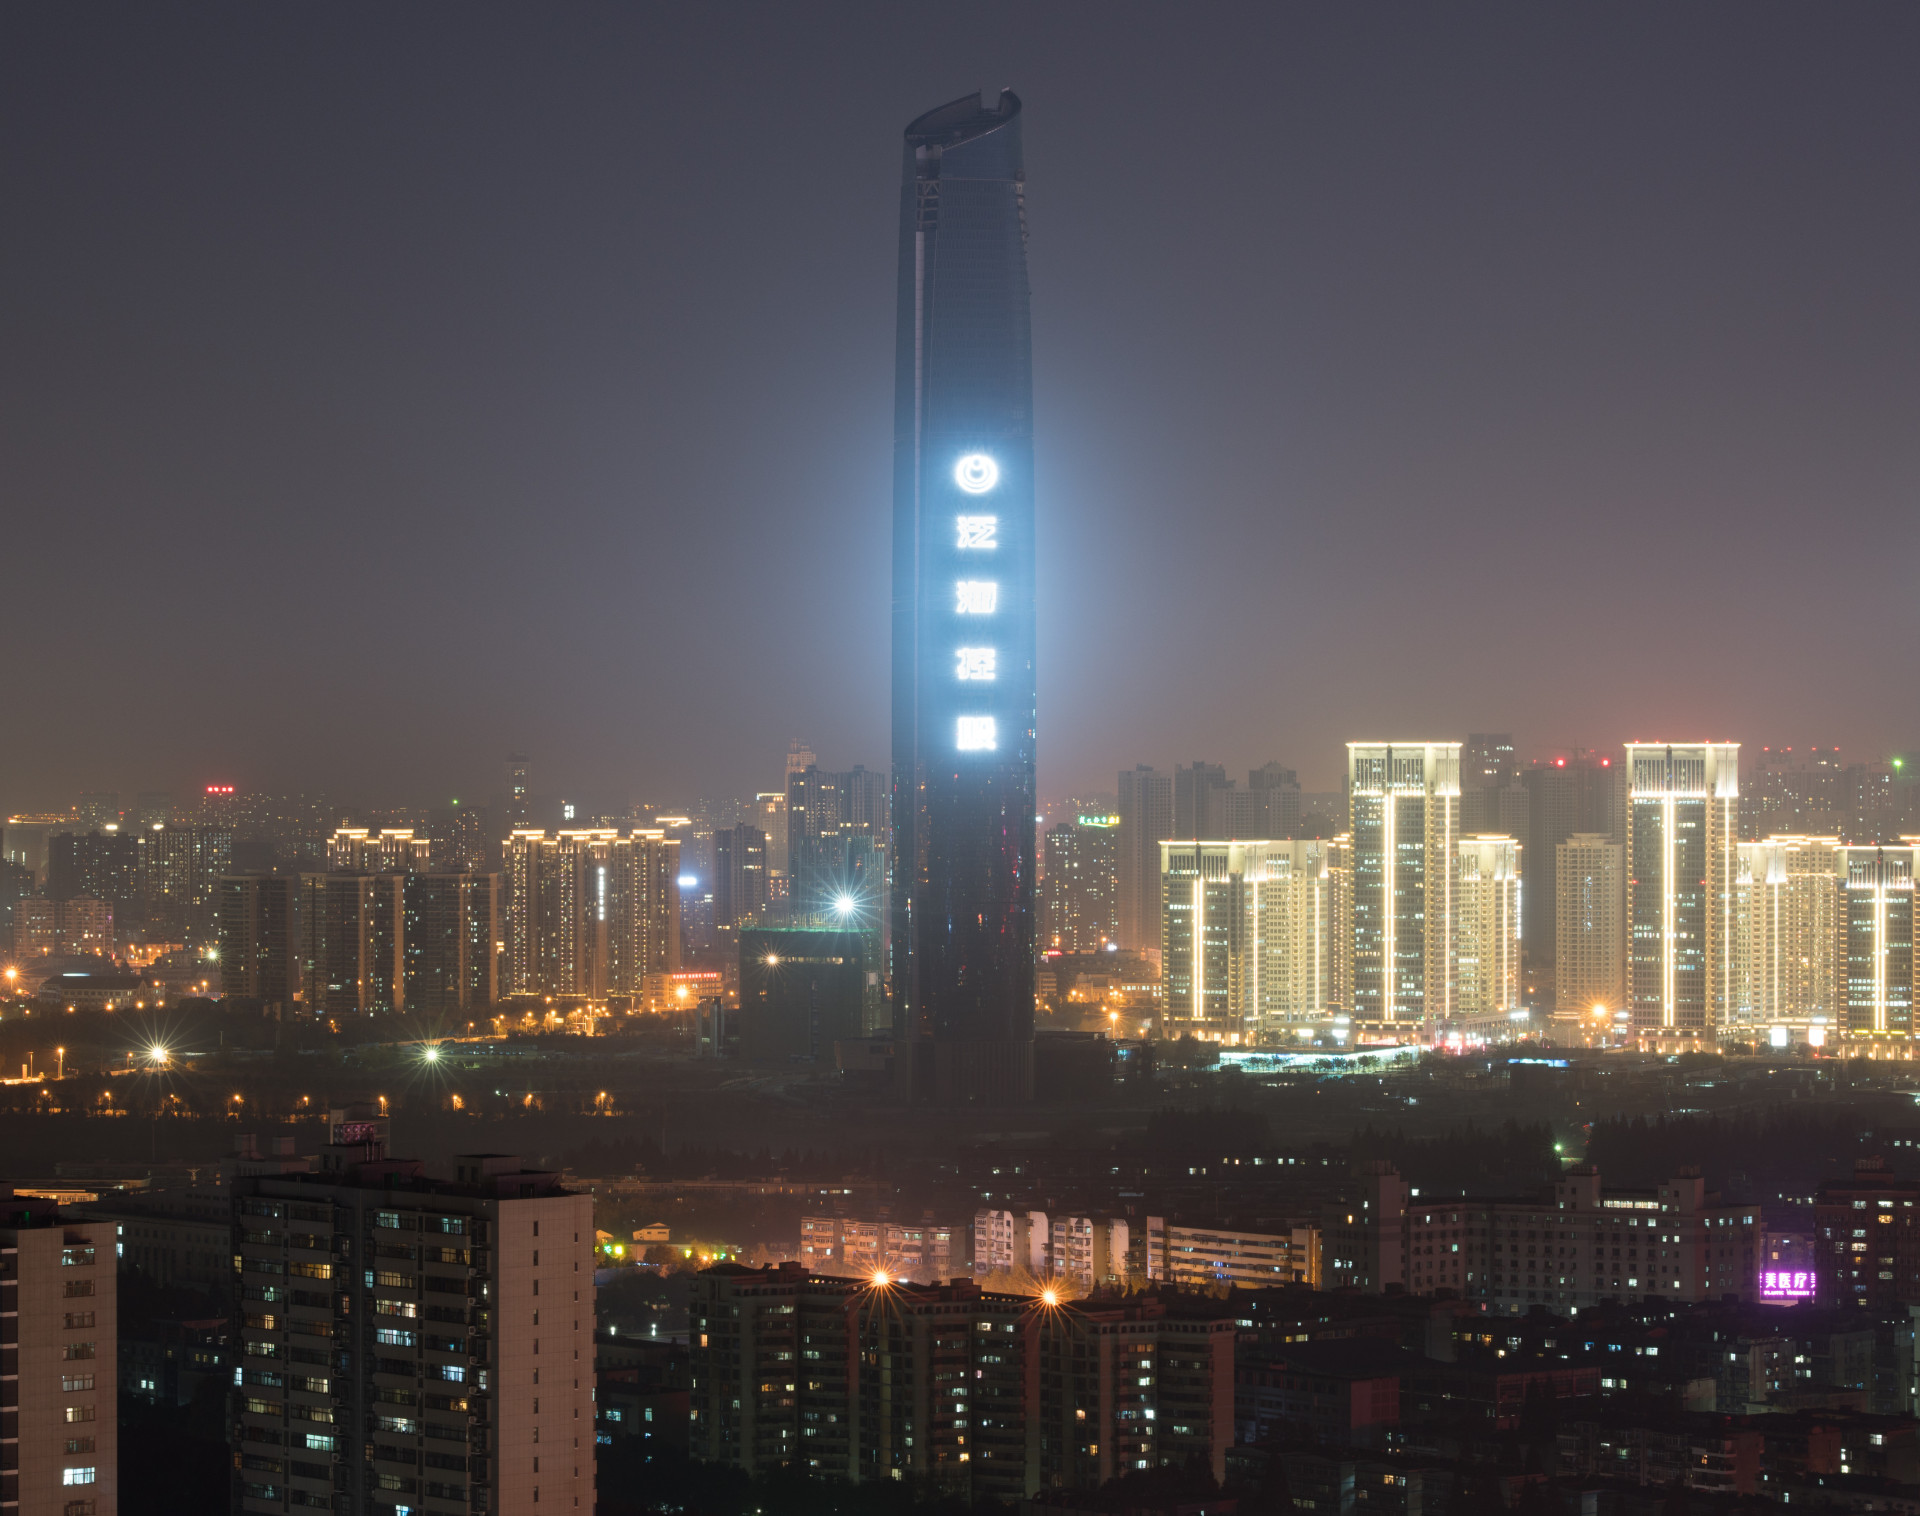 <p>Cette tour située à Wuhan, en Chine, est toujours en construction et devrait ouvrir en 2018 à une hauteur définitive de 438 mètres.</p> <p>Découvrez aussi: <a class="gs-title" href="https://www.starsinsider.com/fr/voyage/365373/decouvrez-les-tours-les-plus-celebres-du-monde" rel="noopener">Découvrez les tours les plus célèbres du monde</a></p><p><a href="https://www.msn.com/fr-fr/community/channel/vid-7xx8mnucu55yw63we9va2gwr7uihbxwc68fxqp25x6tg4ftibpra?cvid=94631541bc0f4f89bfd59158d696ad7e">Suivez-nous et accédez tous les jours à du contenu exclusif</a></p>